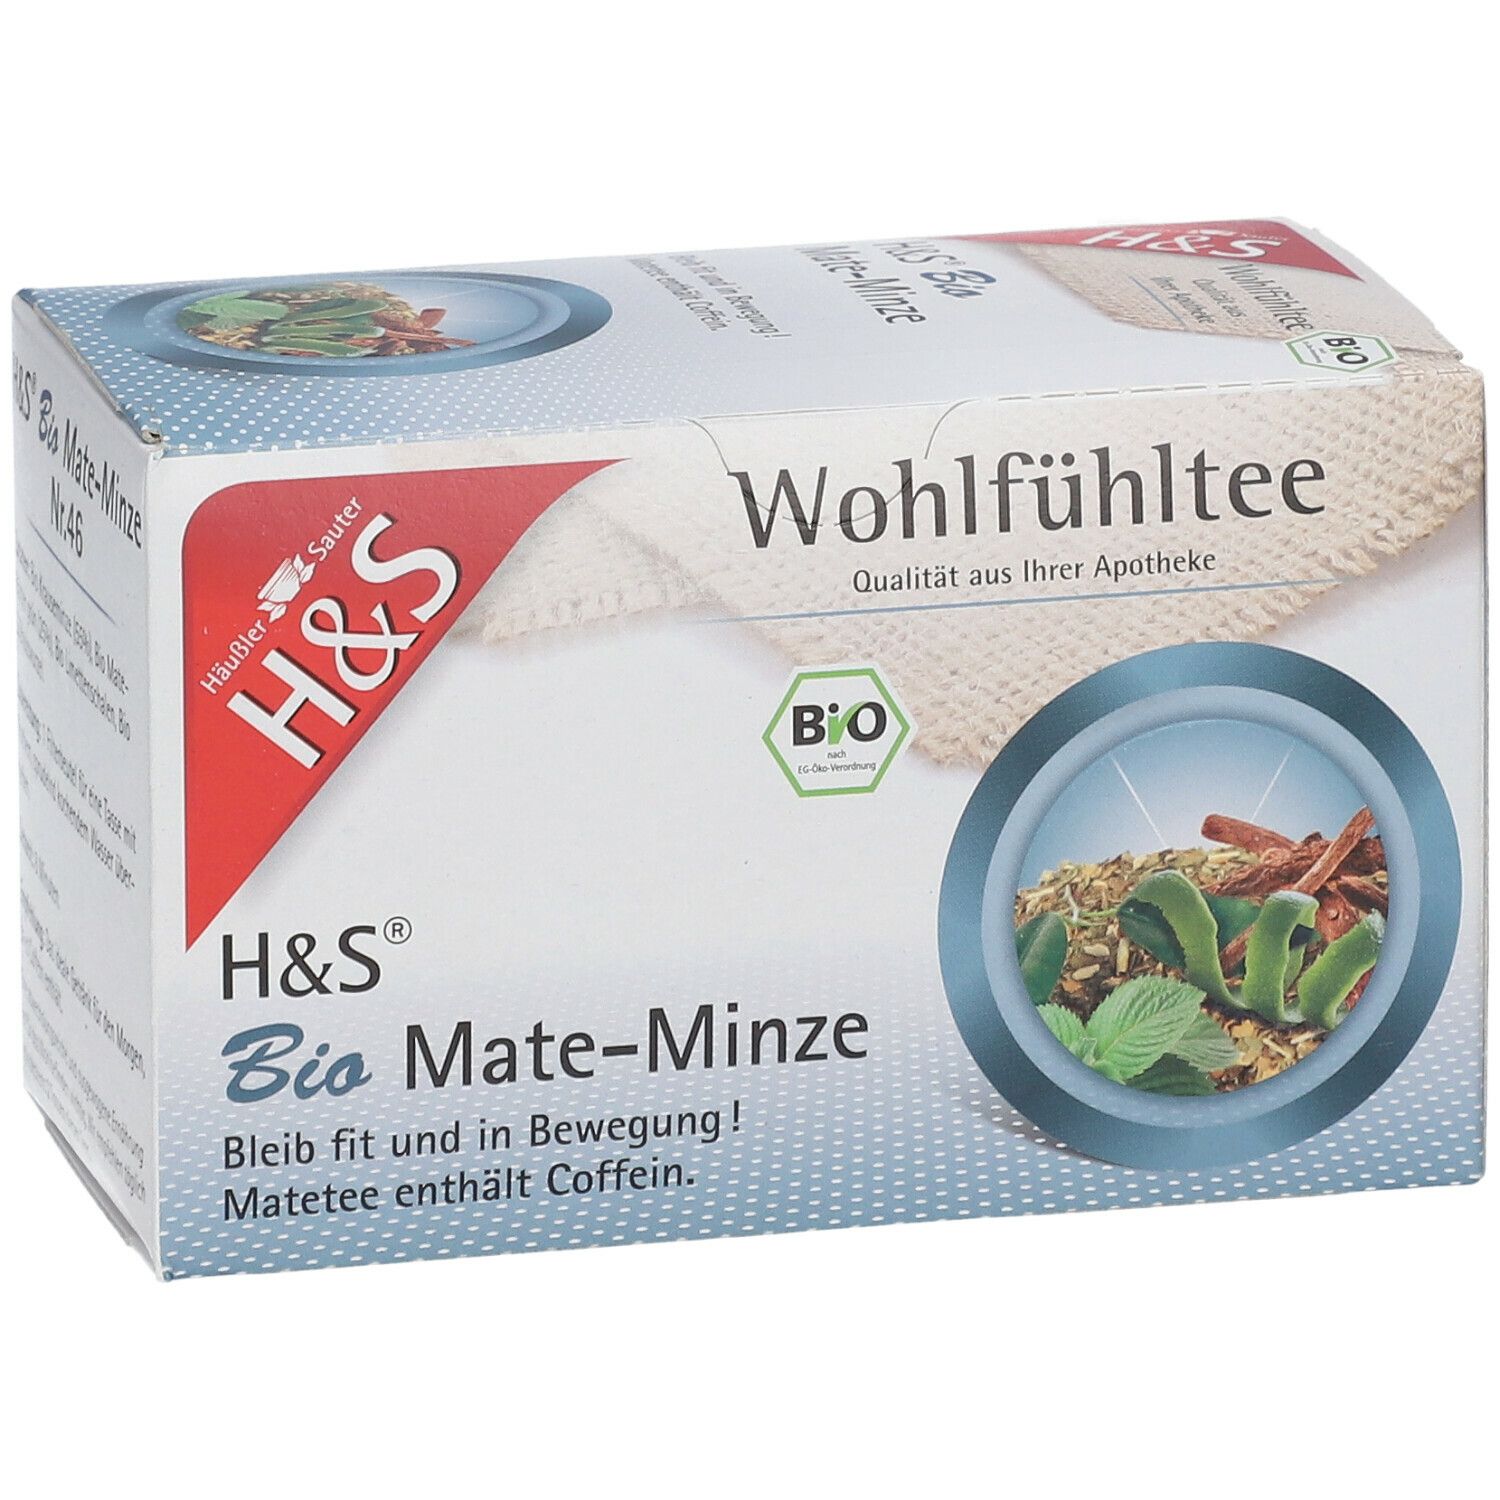 H&S Wohlfühltee Bio Mate-Minze